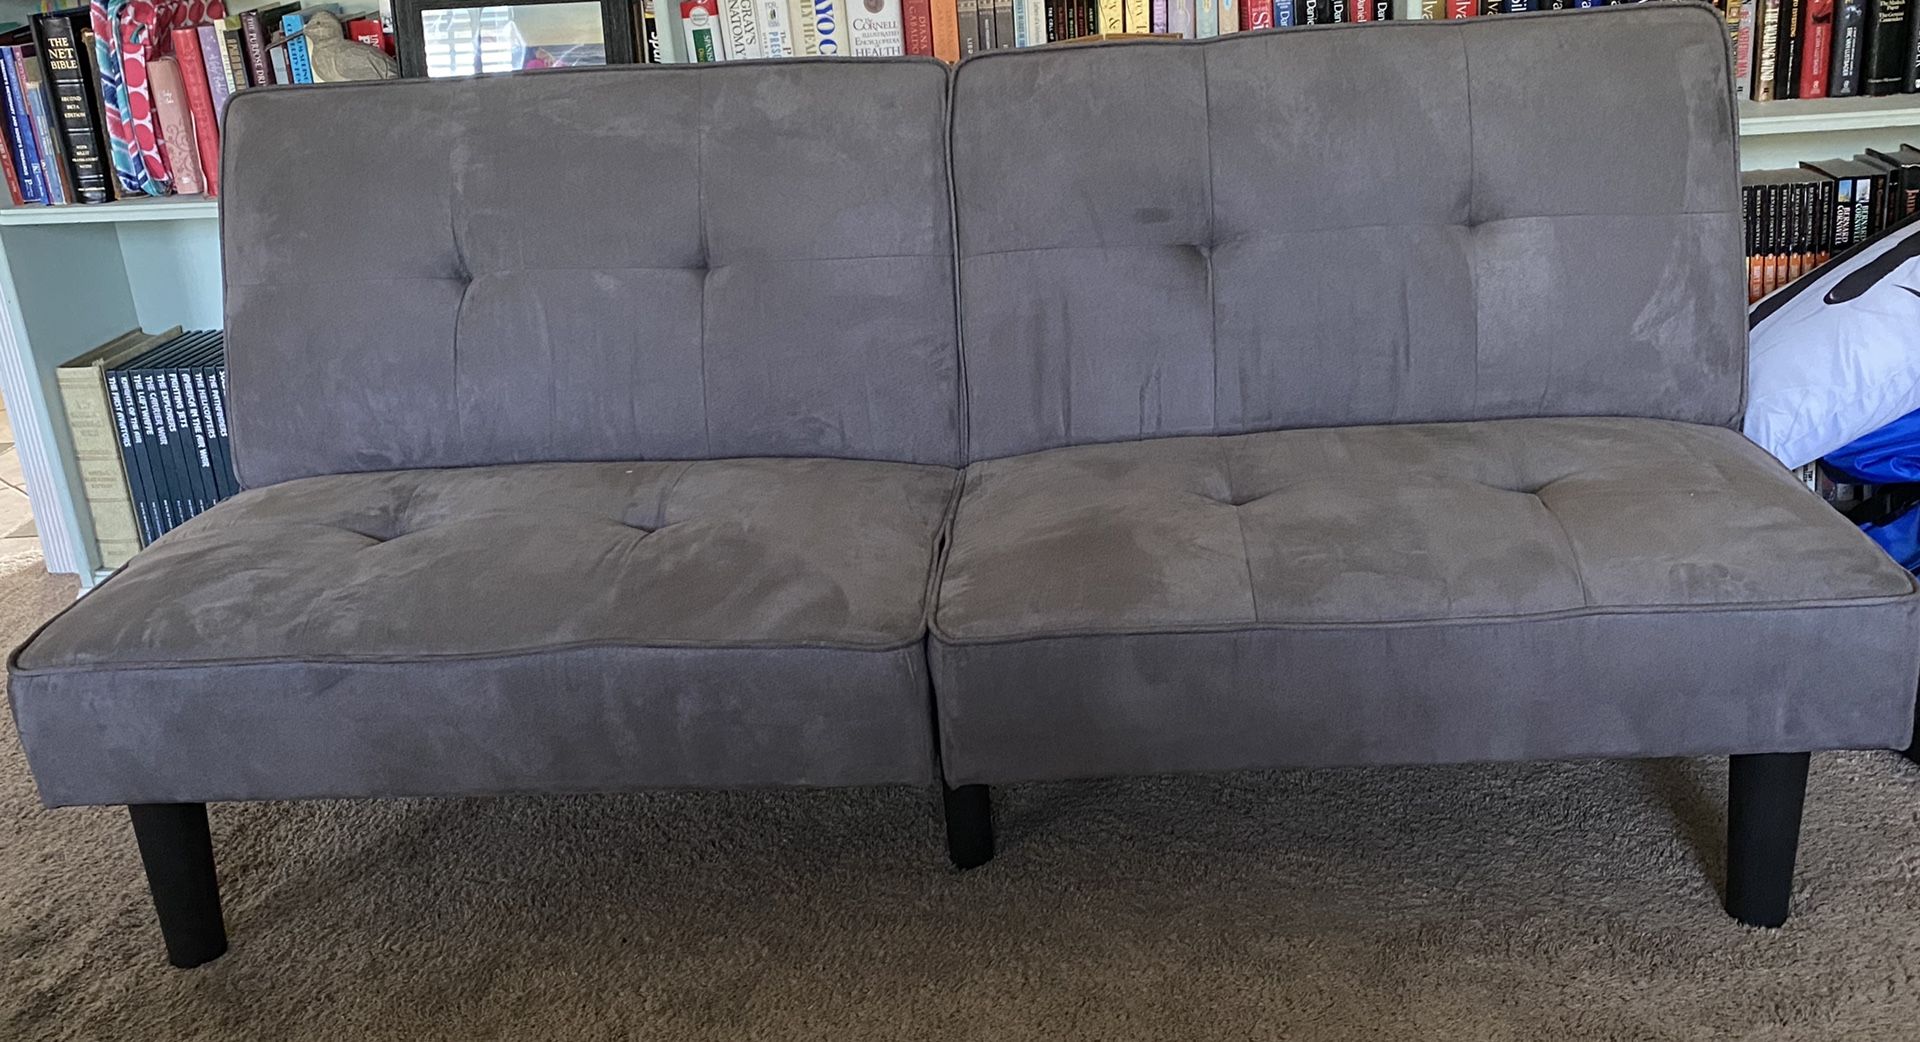 Mainstays tufted gray futon